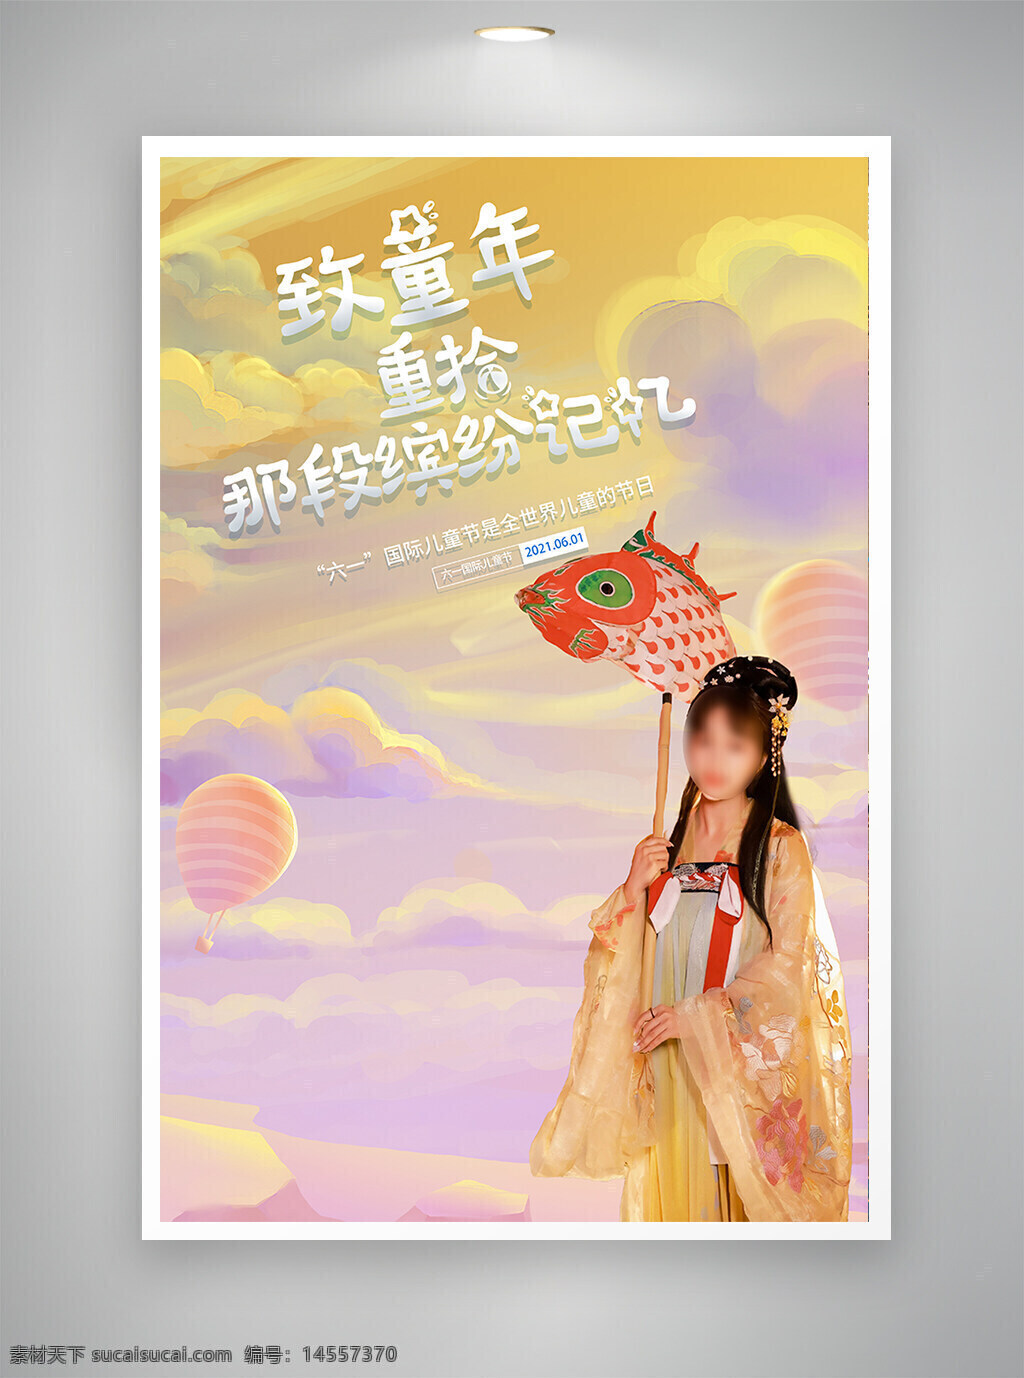 中国风海报 古风海报 促销海报 节日海报 童年记忆